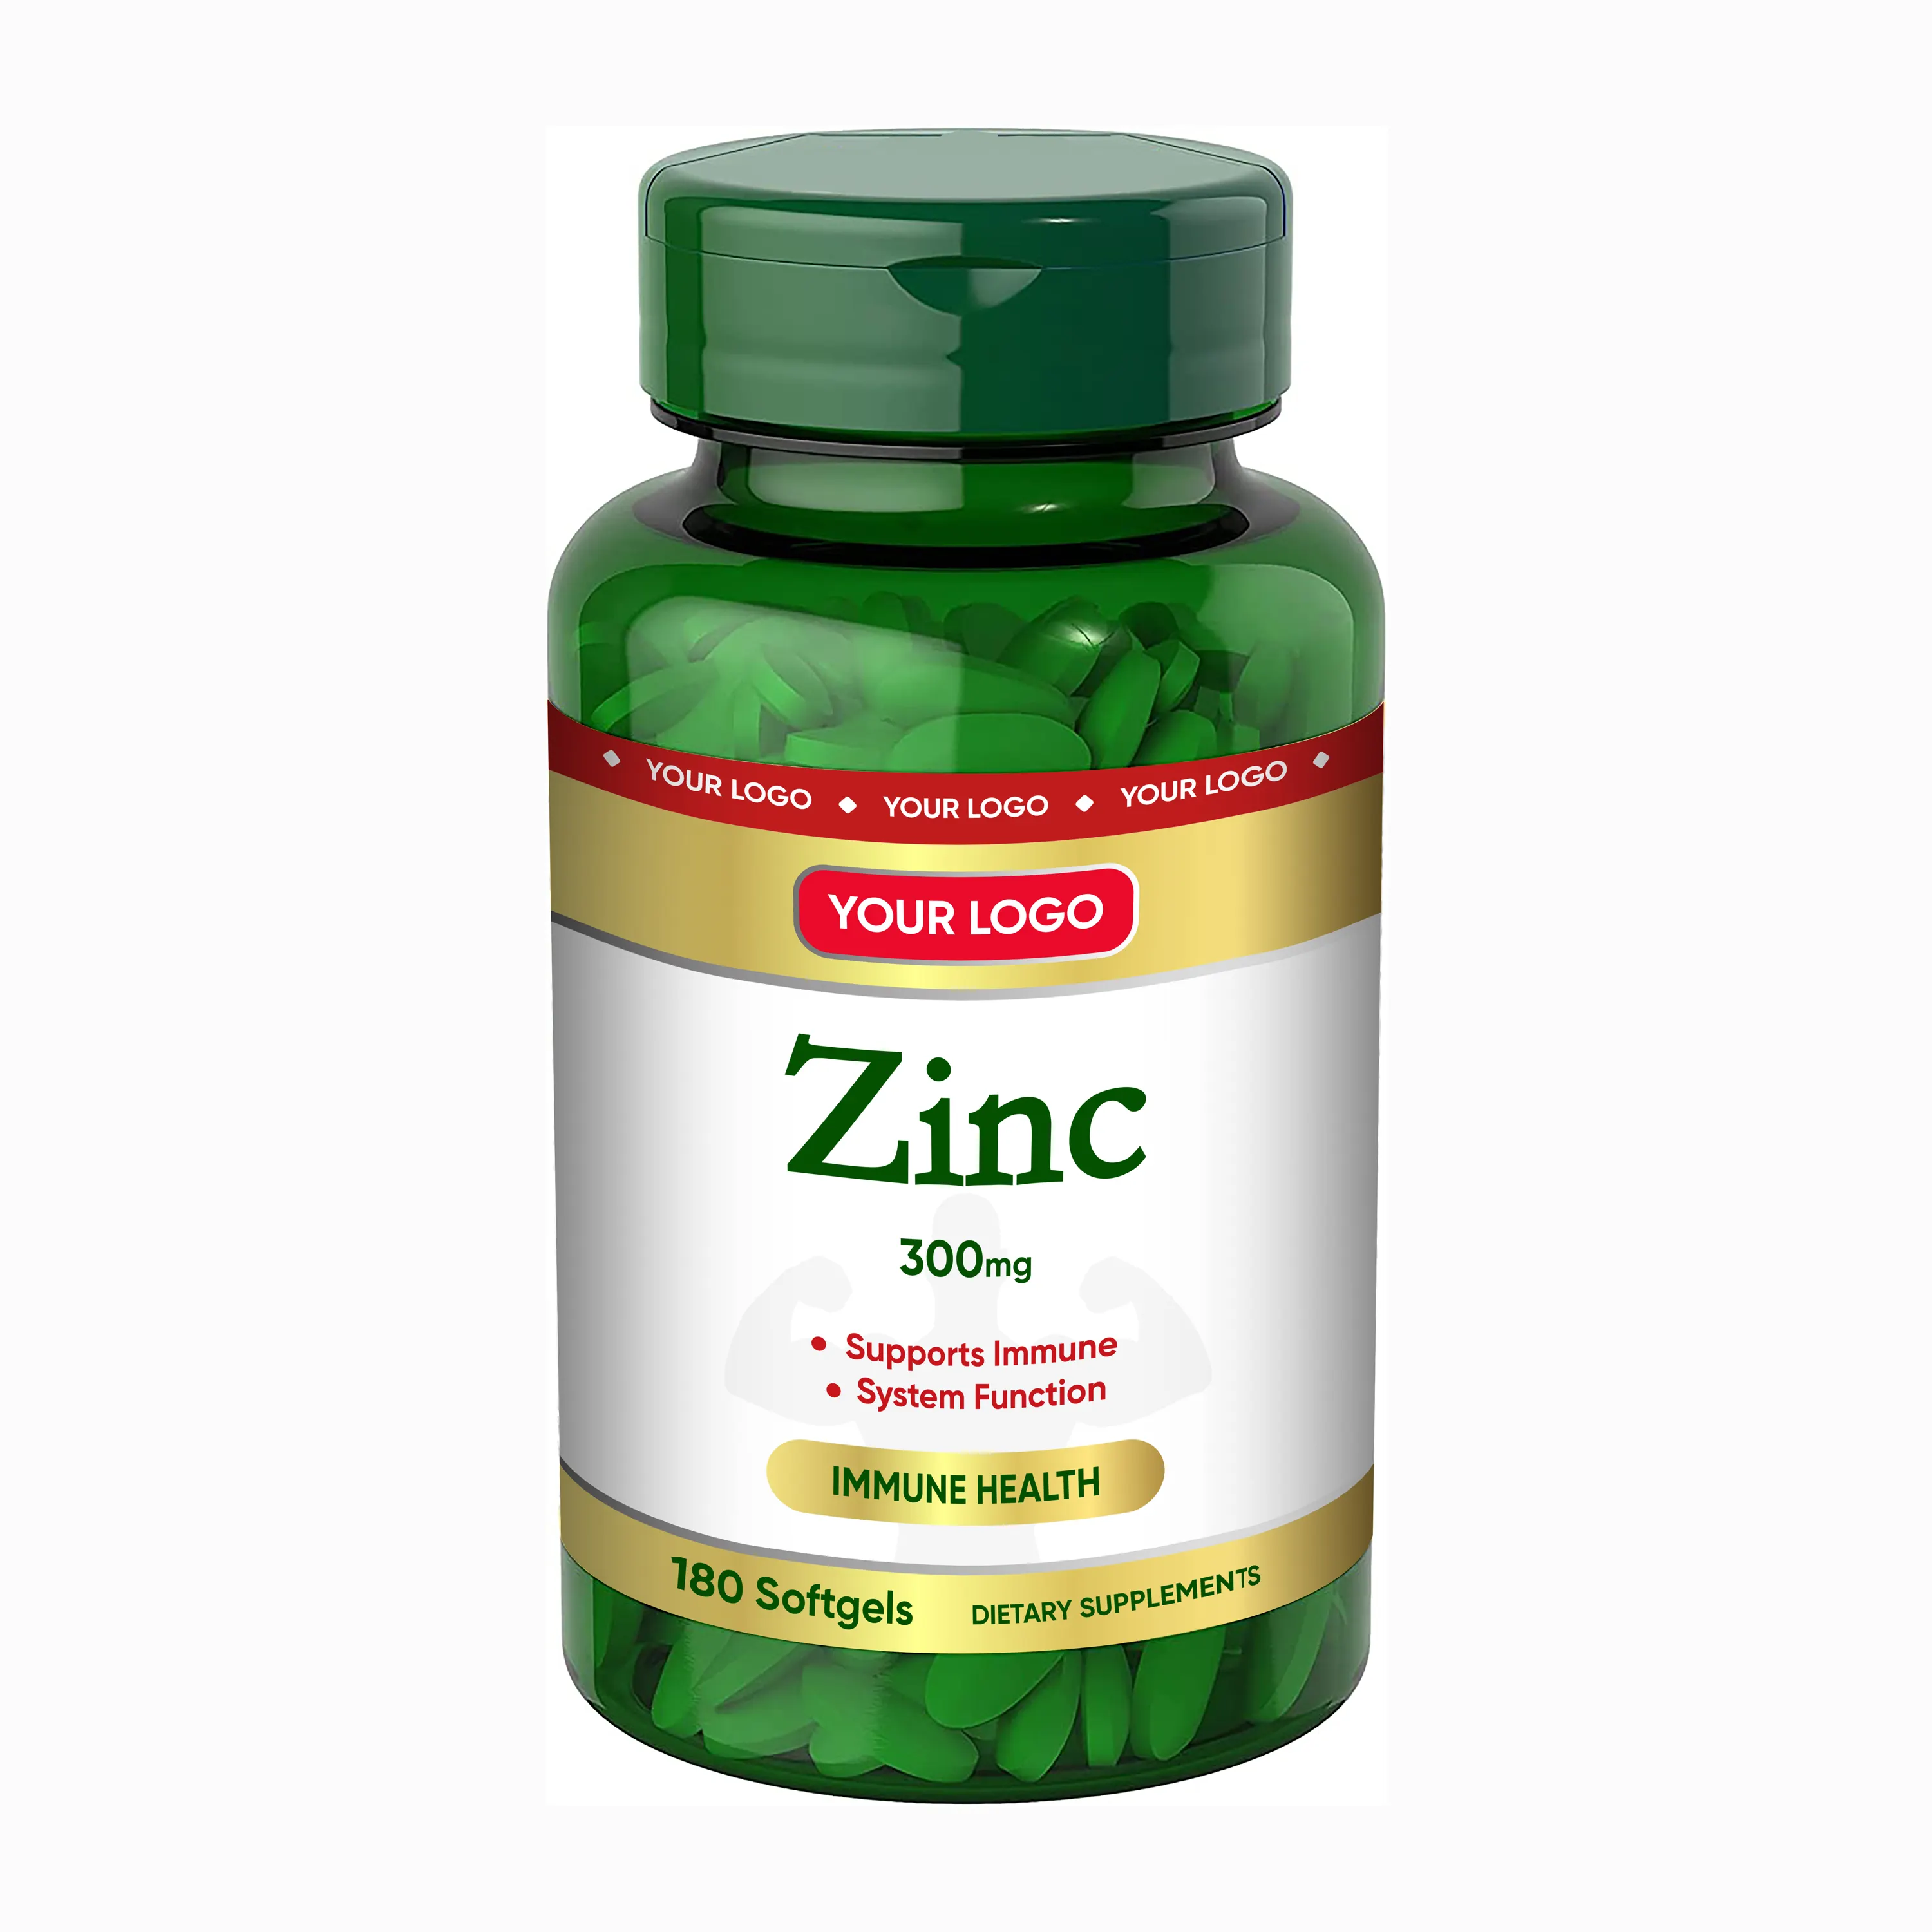 GMP essential-tabletas de vitamina D3, pastillas esenciales de Zinc y magnesio para fortalecer los huesos y los dientes, soporte para las funciones de los músculos y los nervios